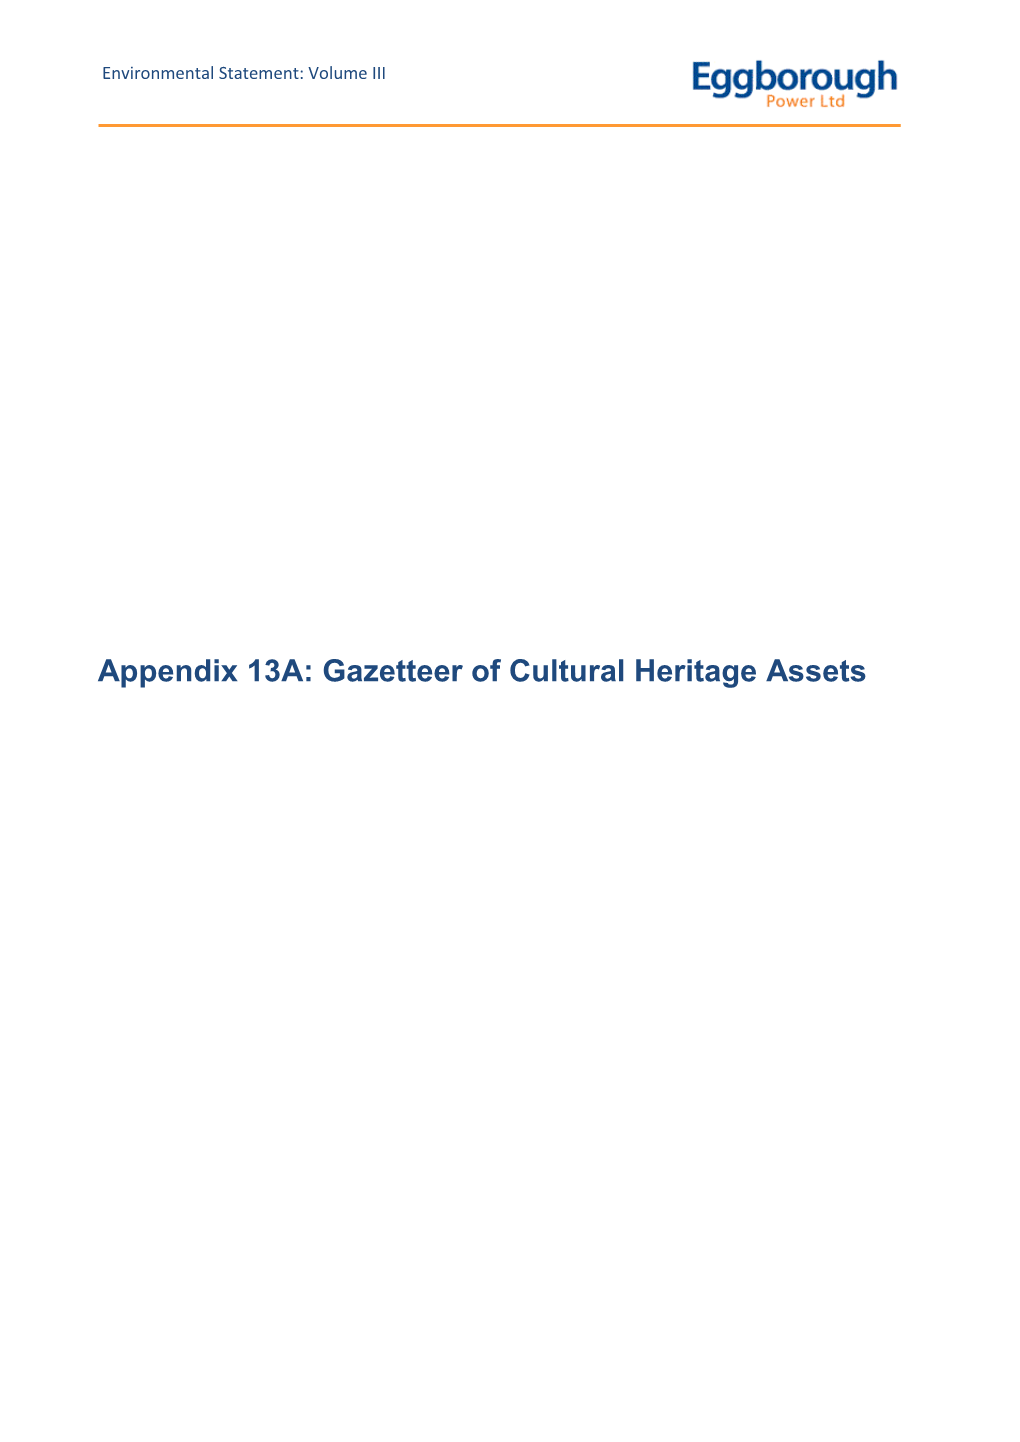 Gazetteer of Cultural Heritage Assets